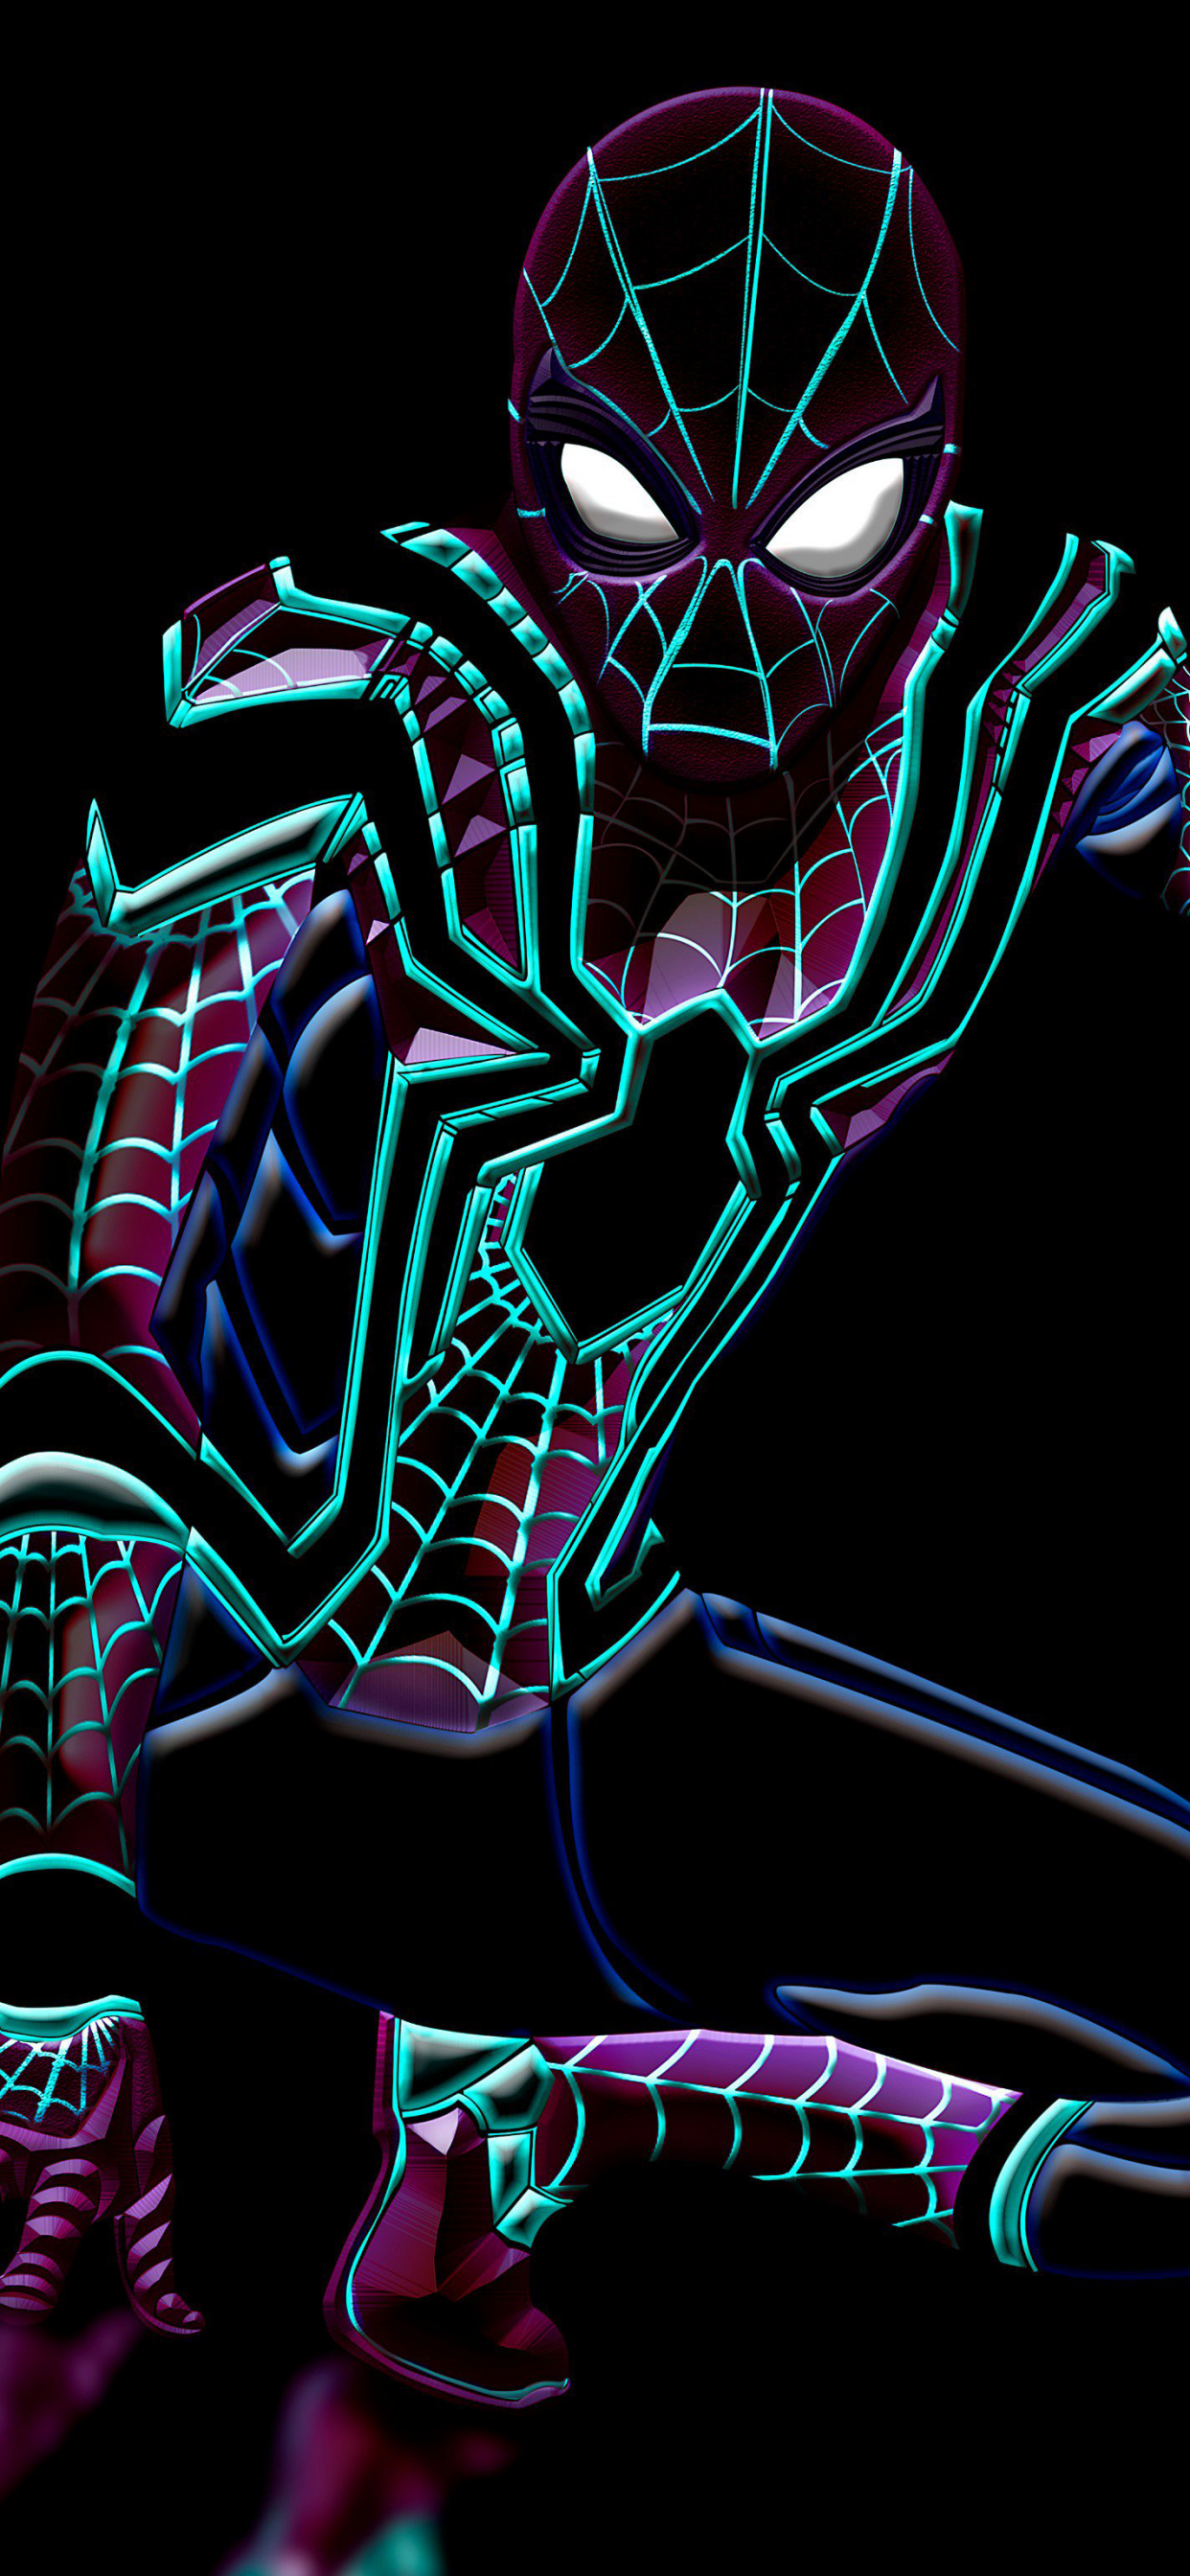 Hãy xem hình nền Spider-Man Wallpaper đầy sức mạnh, sự năng động và nghị lực để khởi đầu ngày mới của bạn.